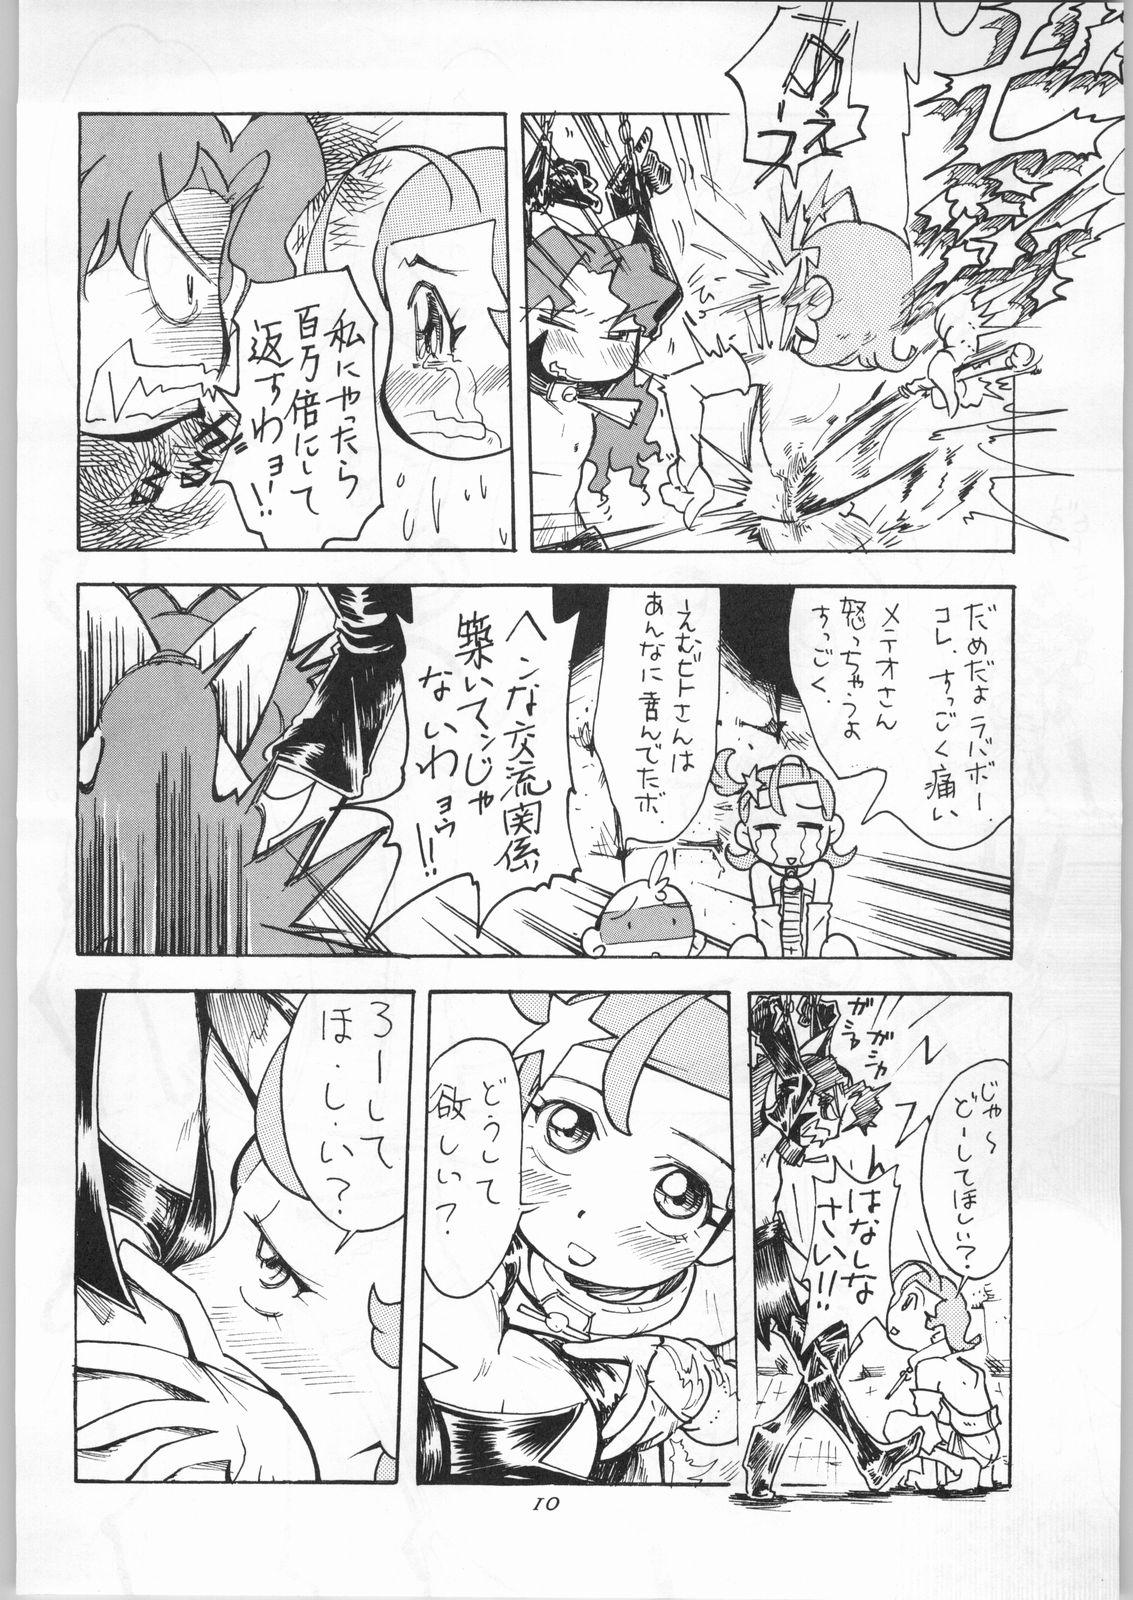 Made Hoshi ni Etoile - Cosmic baton girl comet san Adorable - Page 11